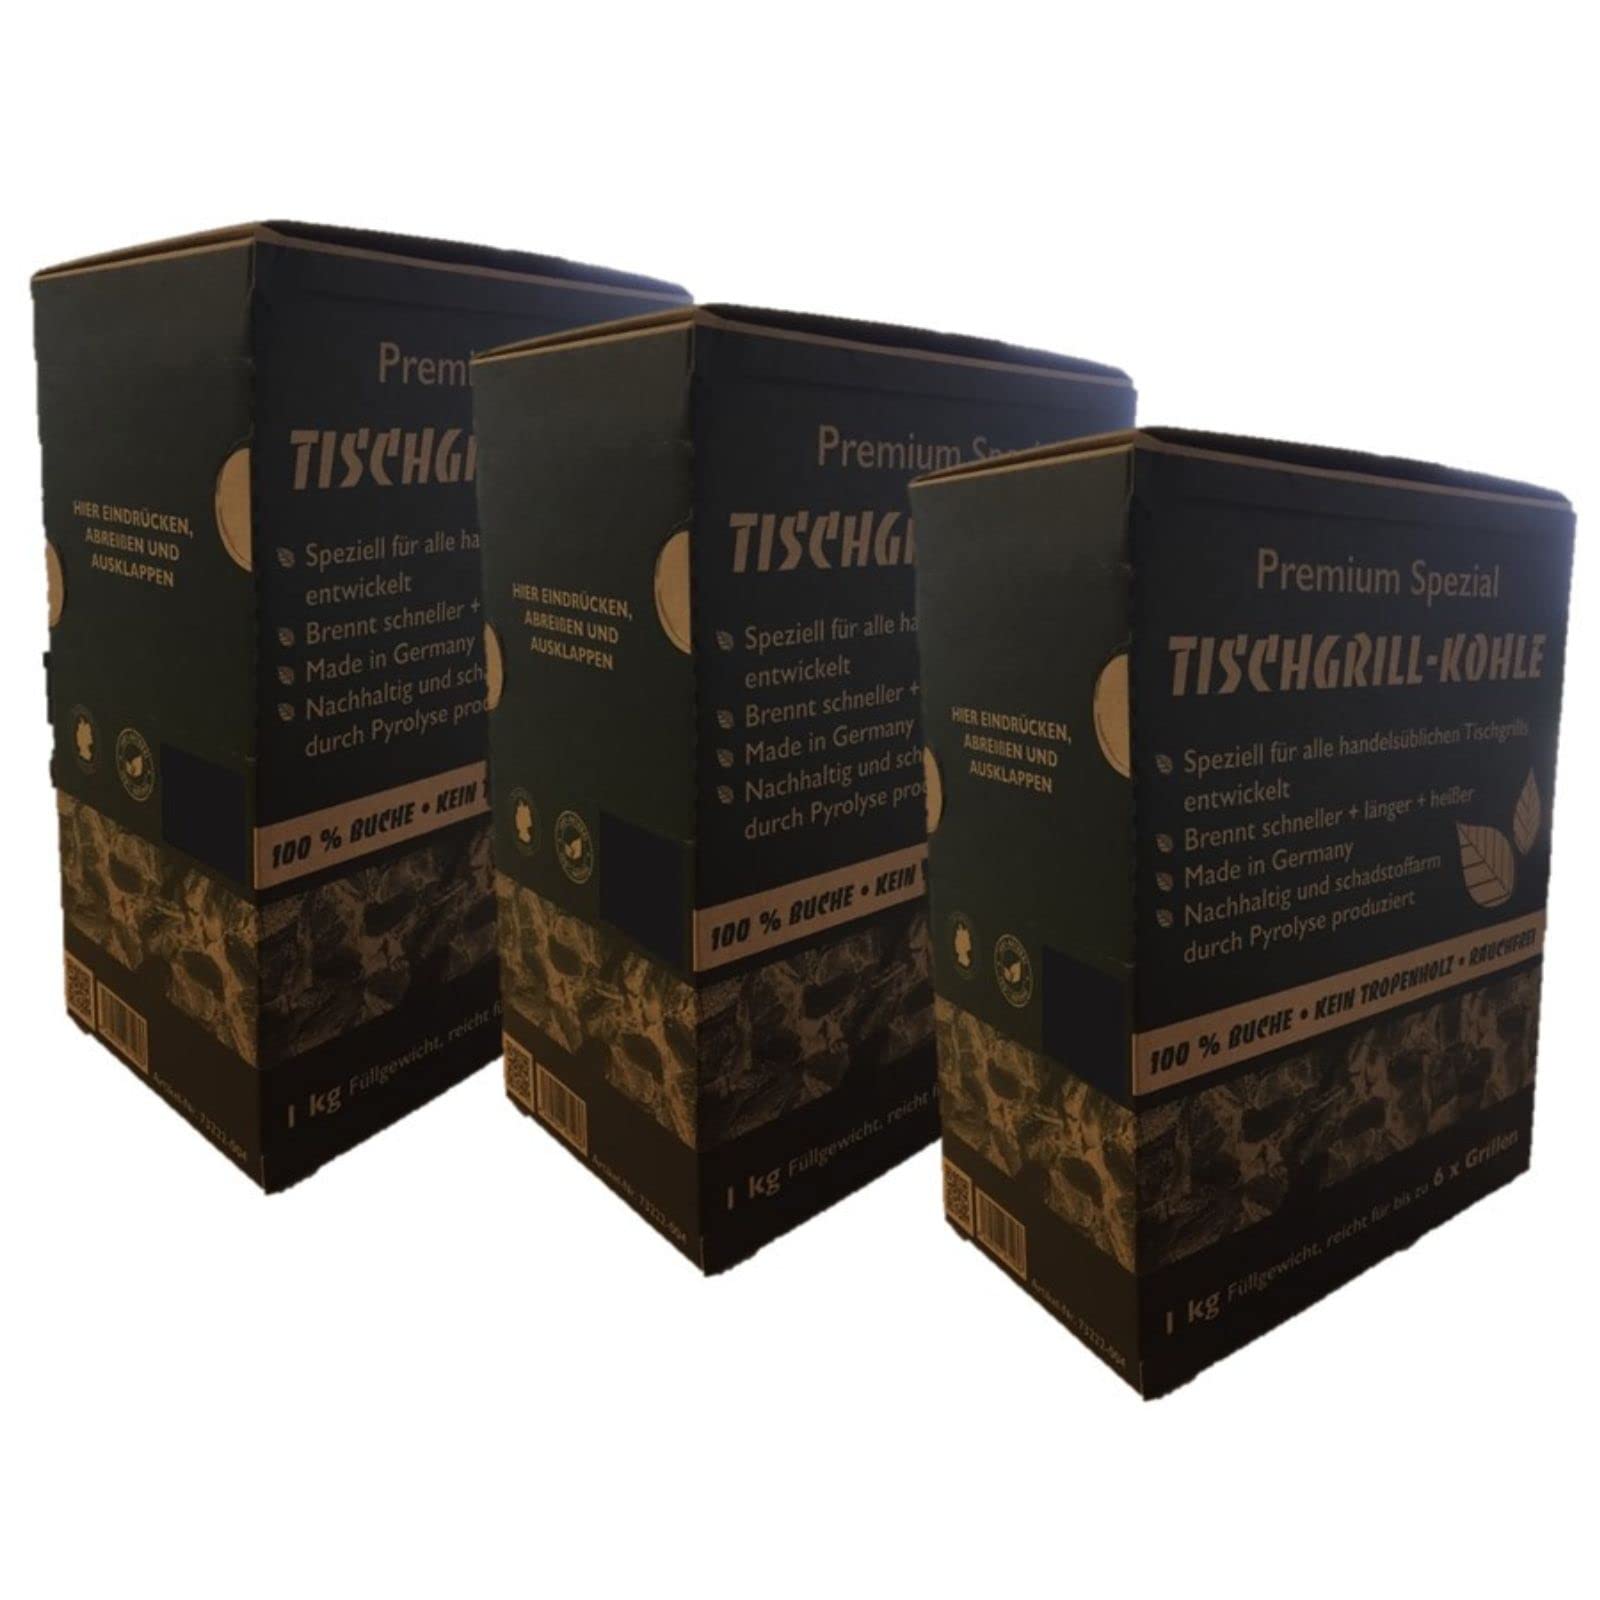 3 x 1 kg Premium Spezial Tischgrill Holzkohle für alle handelsüblichen Tischgrills, rauchfrei, 100% Buche, im praktischen Schüttkarton